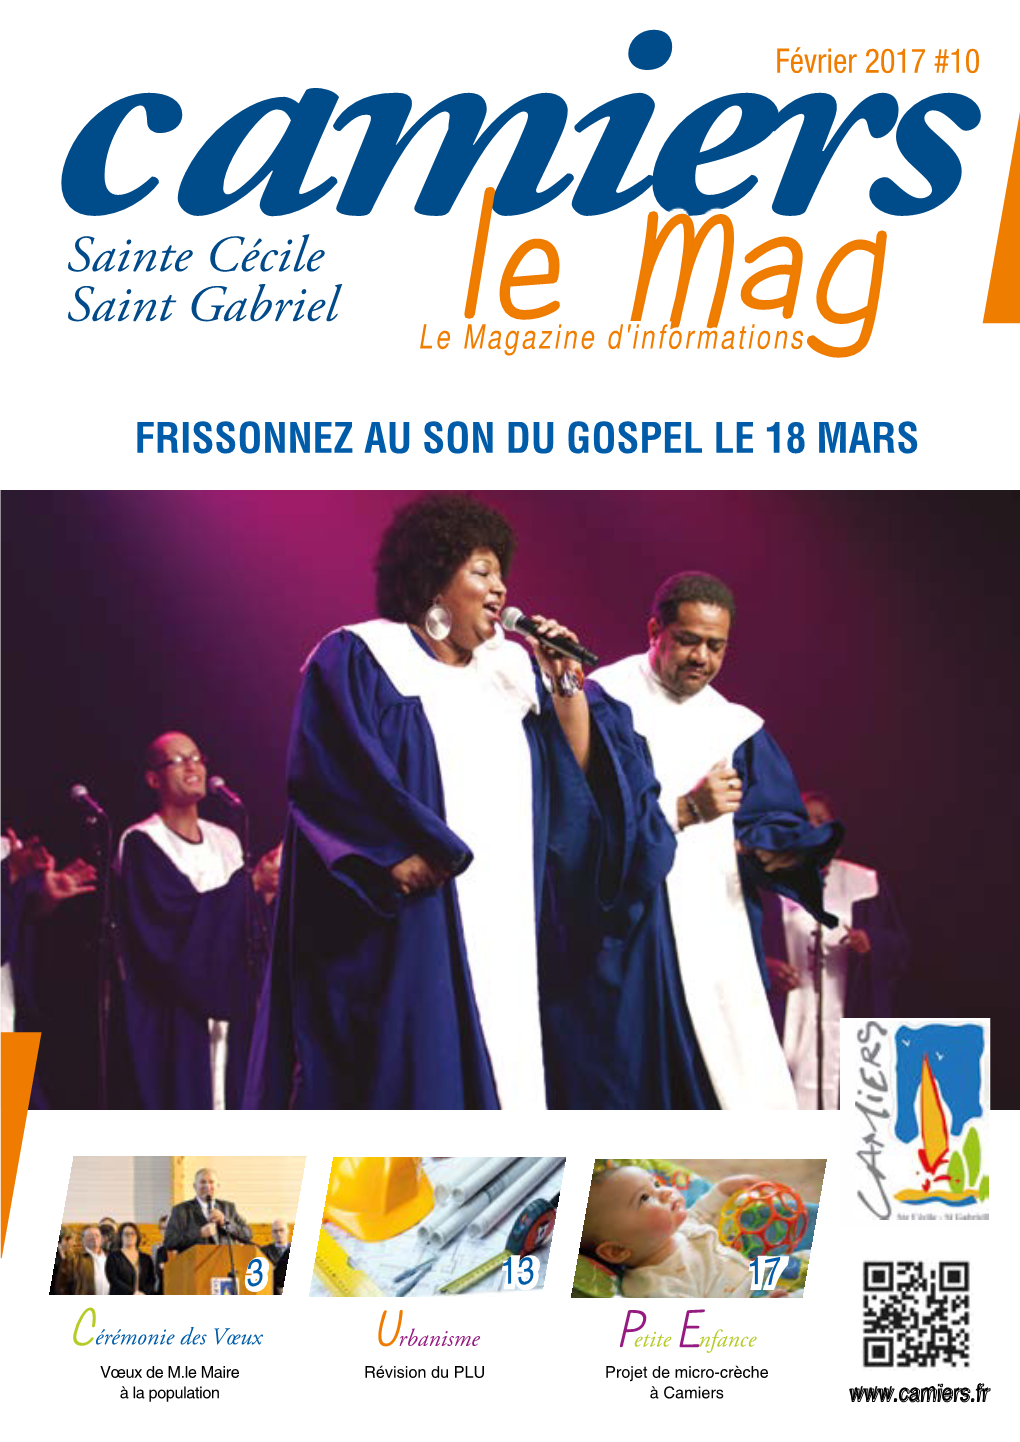 Sainte Cécile Saint Gabriel Le a Le Magazine D'informationsm G